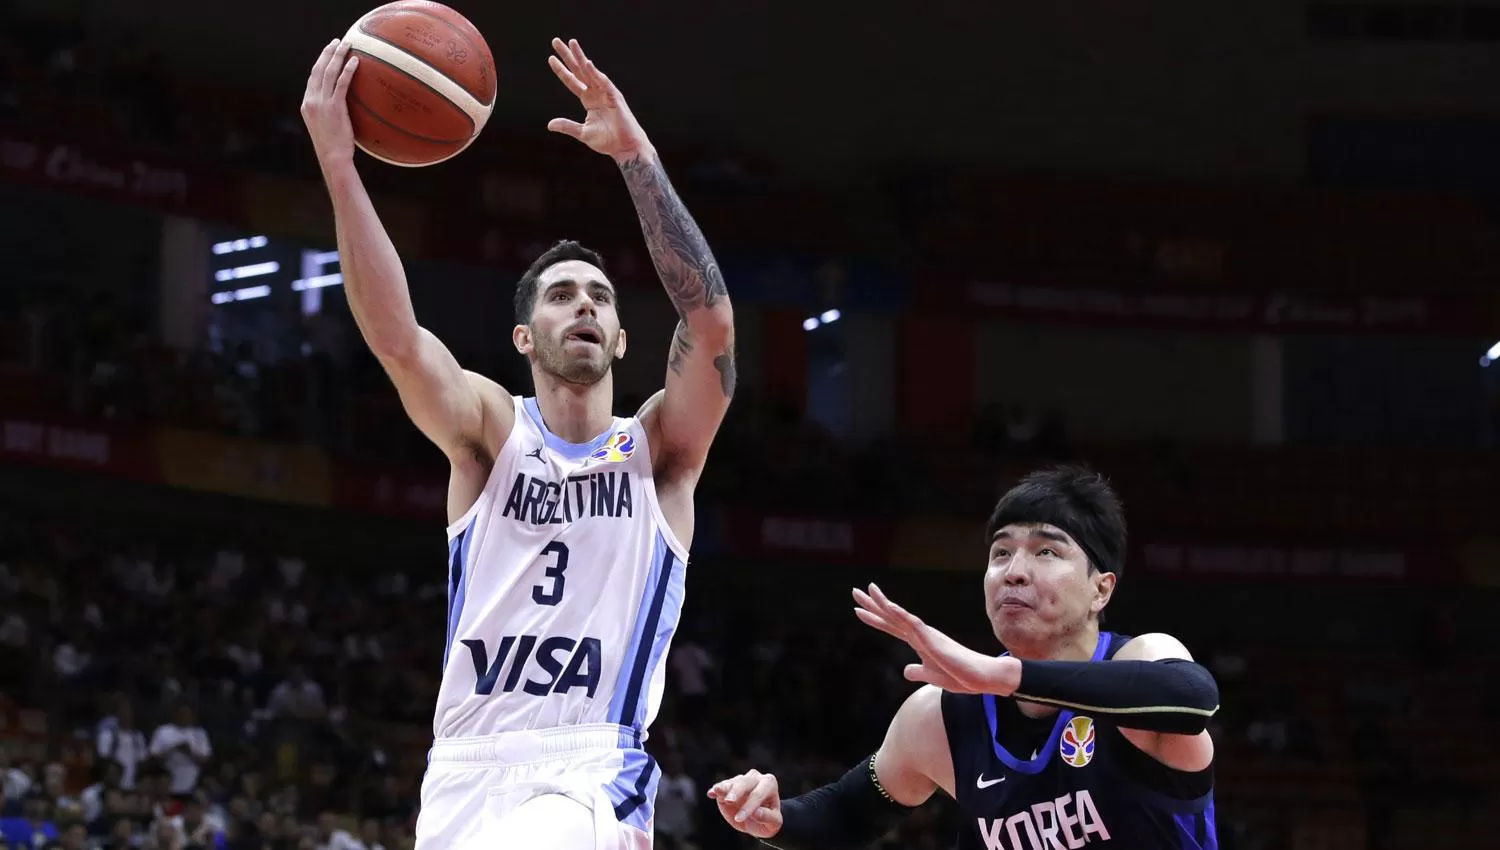 ADN TAFICEÑO. El marplatense Luca Vildoza., hijo del ex basquetbolista tucumano Marcelo Vildoza, jugará en la NBA para los Knicks de Nueva York.